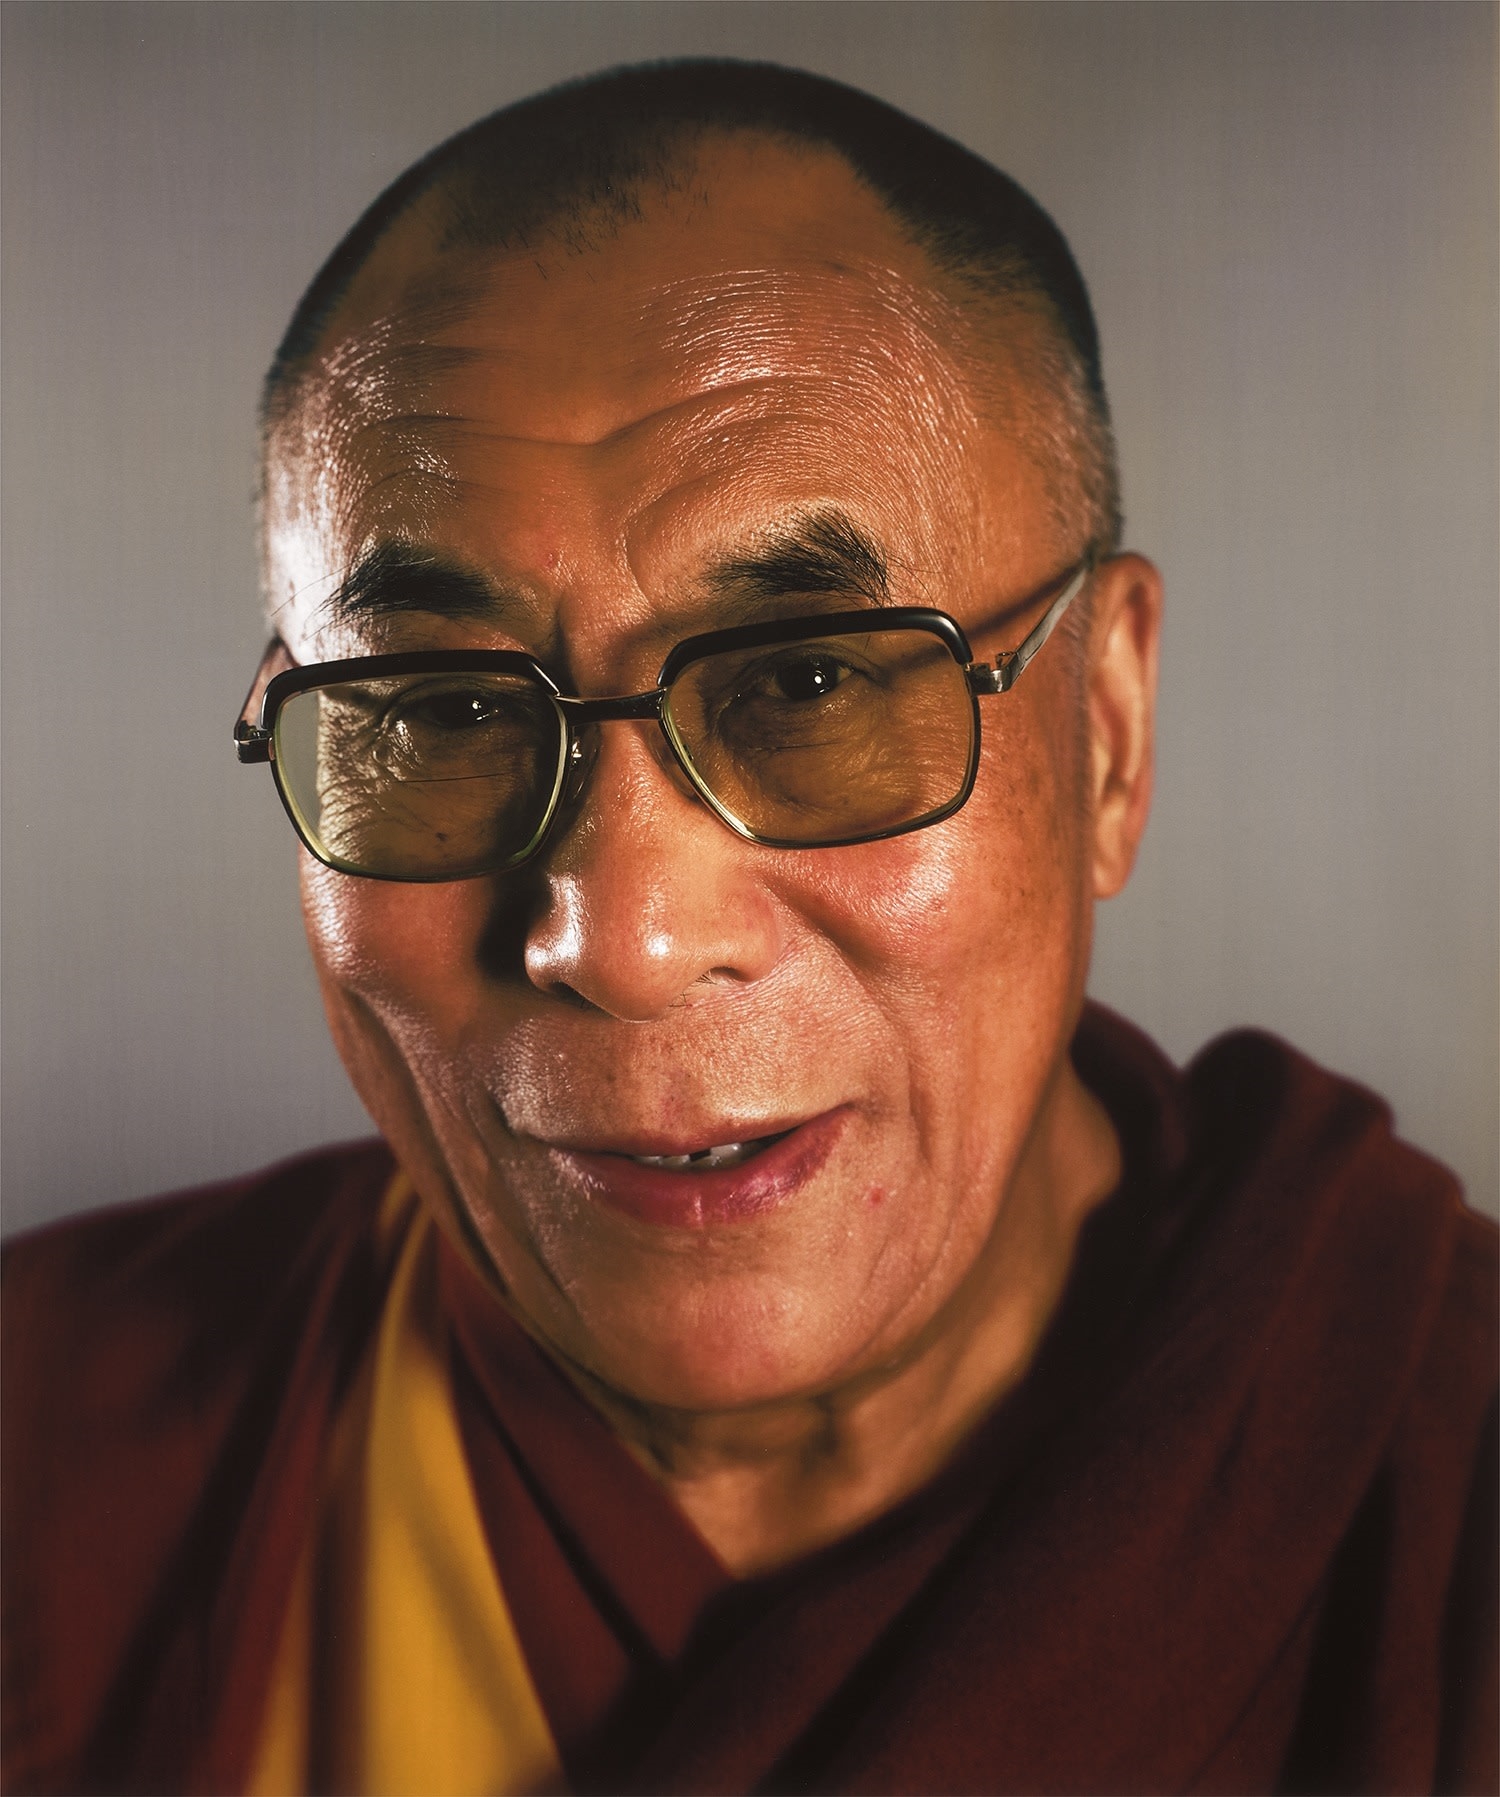 Dalai Lama by Chuck Close, 2005